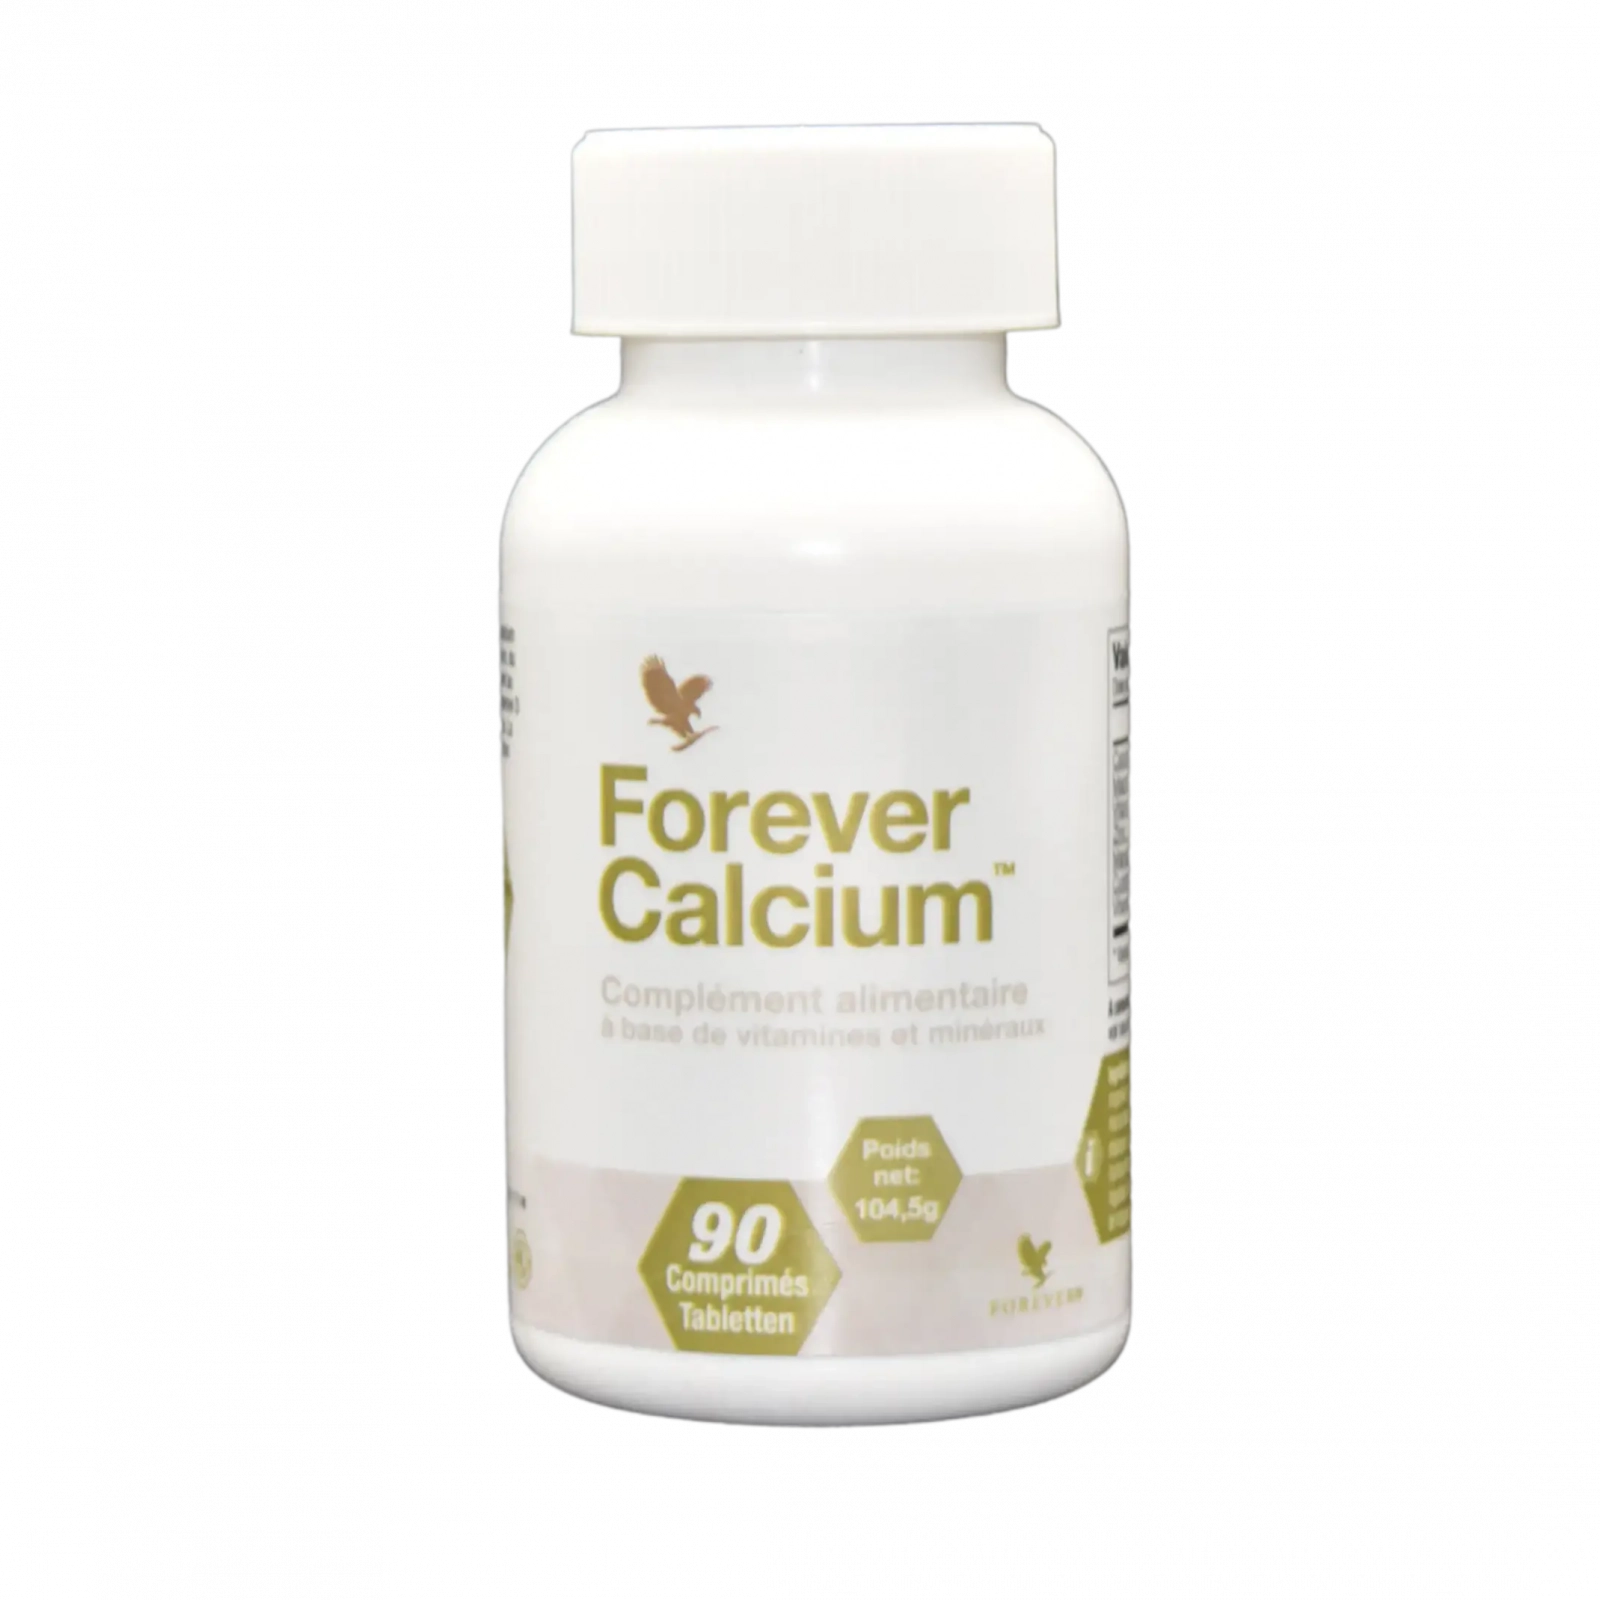 Forever Calcium™